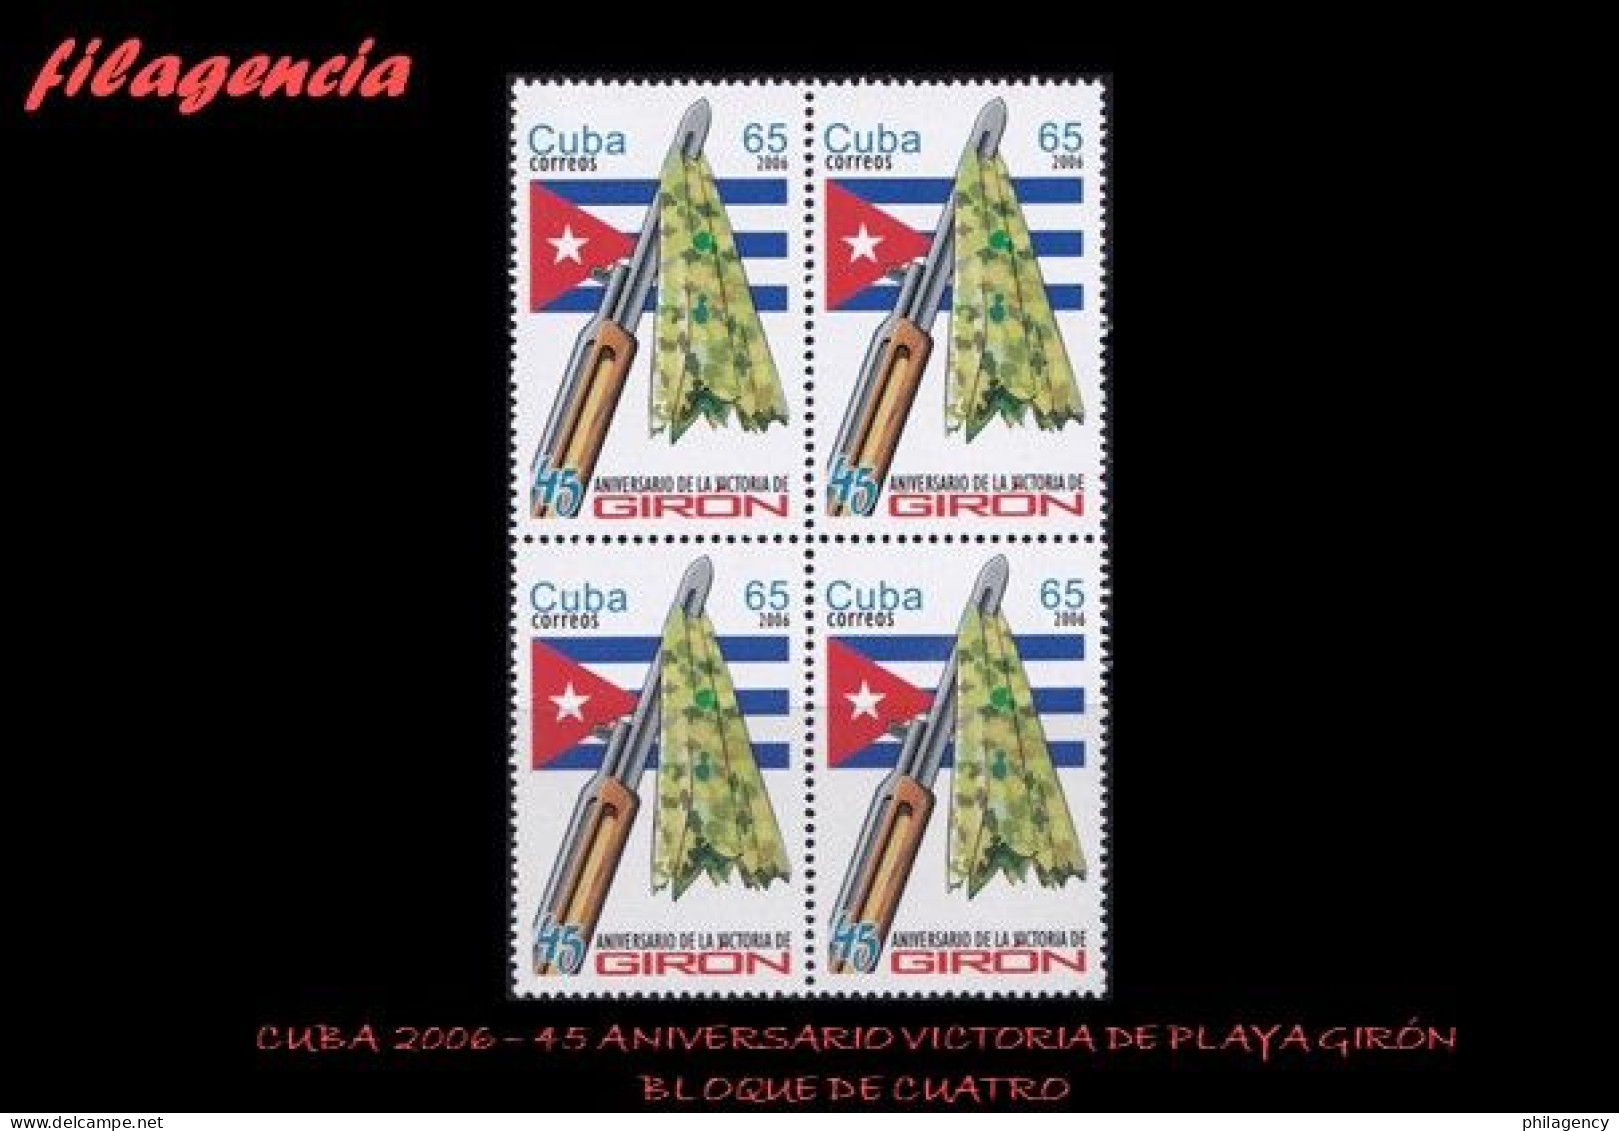 CUBA. BLOQUES DE CUATRO. 2006-09 45 ANIVERSARIO DE LA VICTORIA DE PLAYA GIRÓN - Unused Stamps